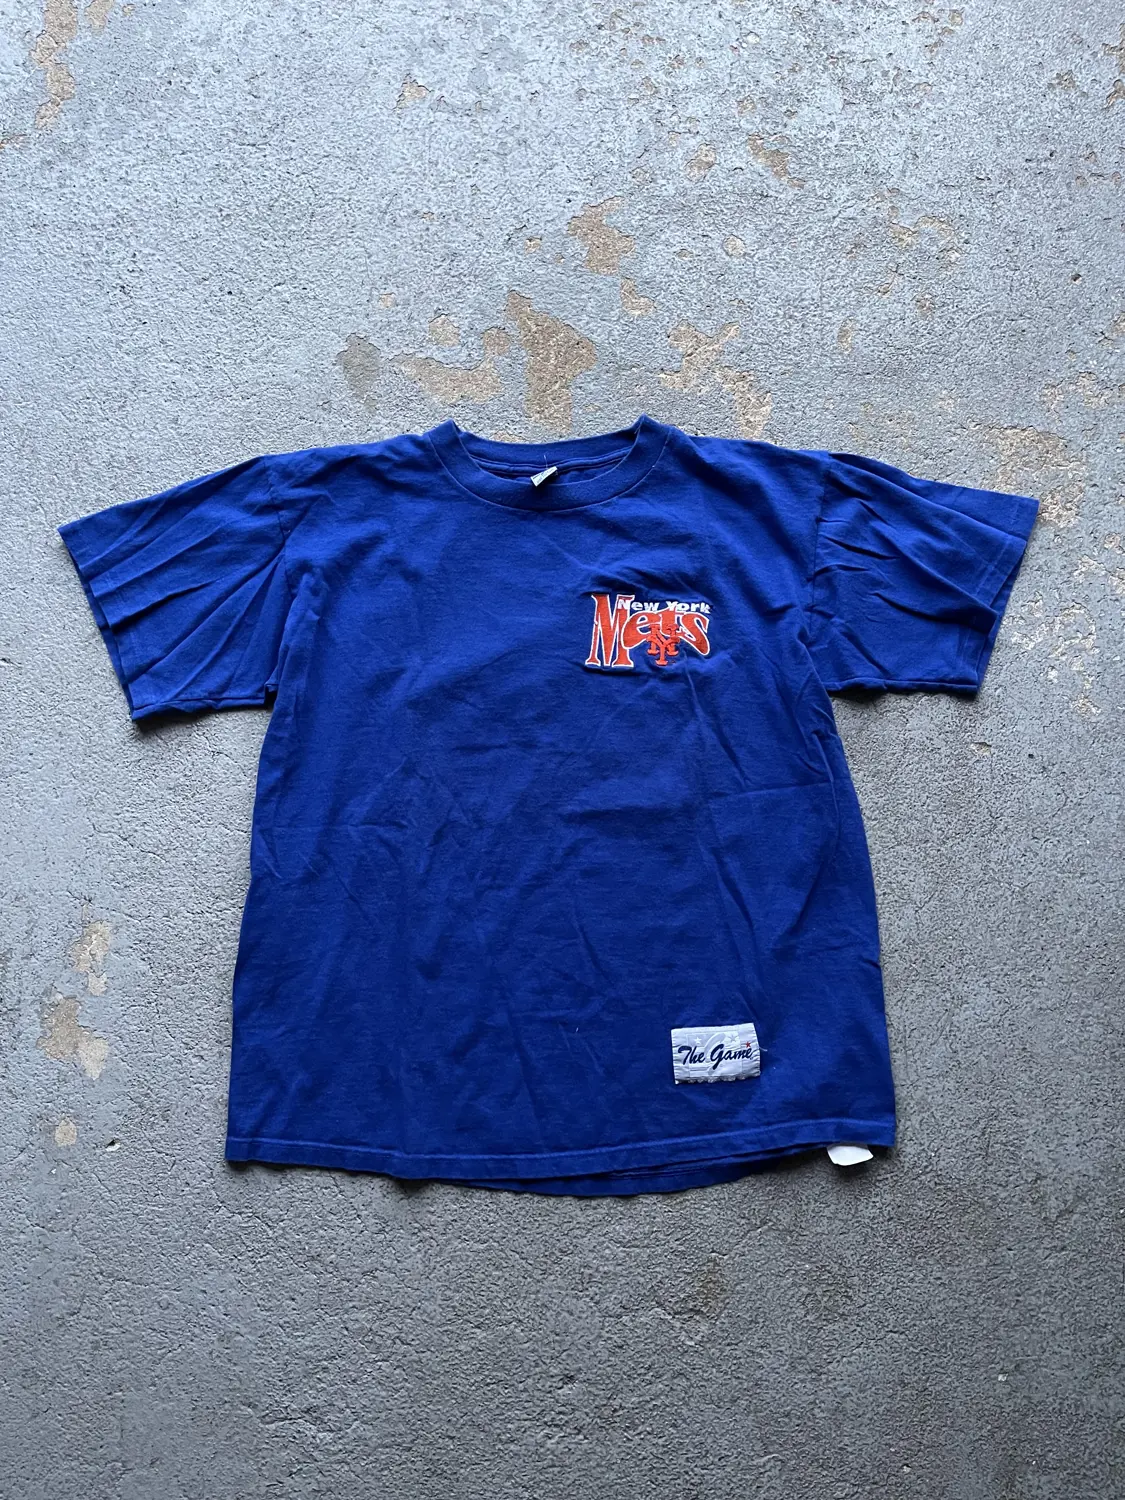 Vintage New York Mets The Game Tee